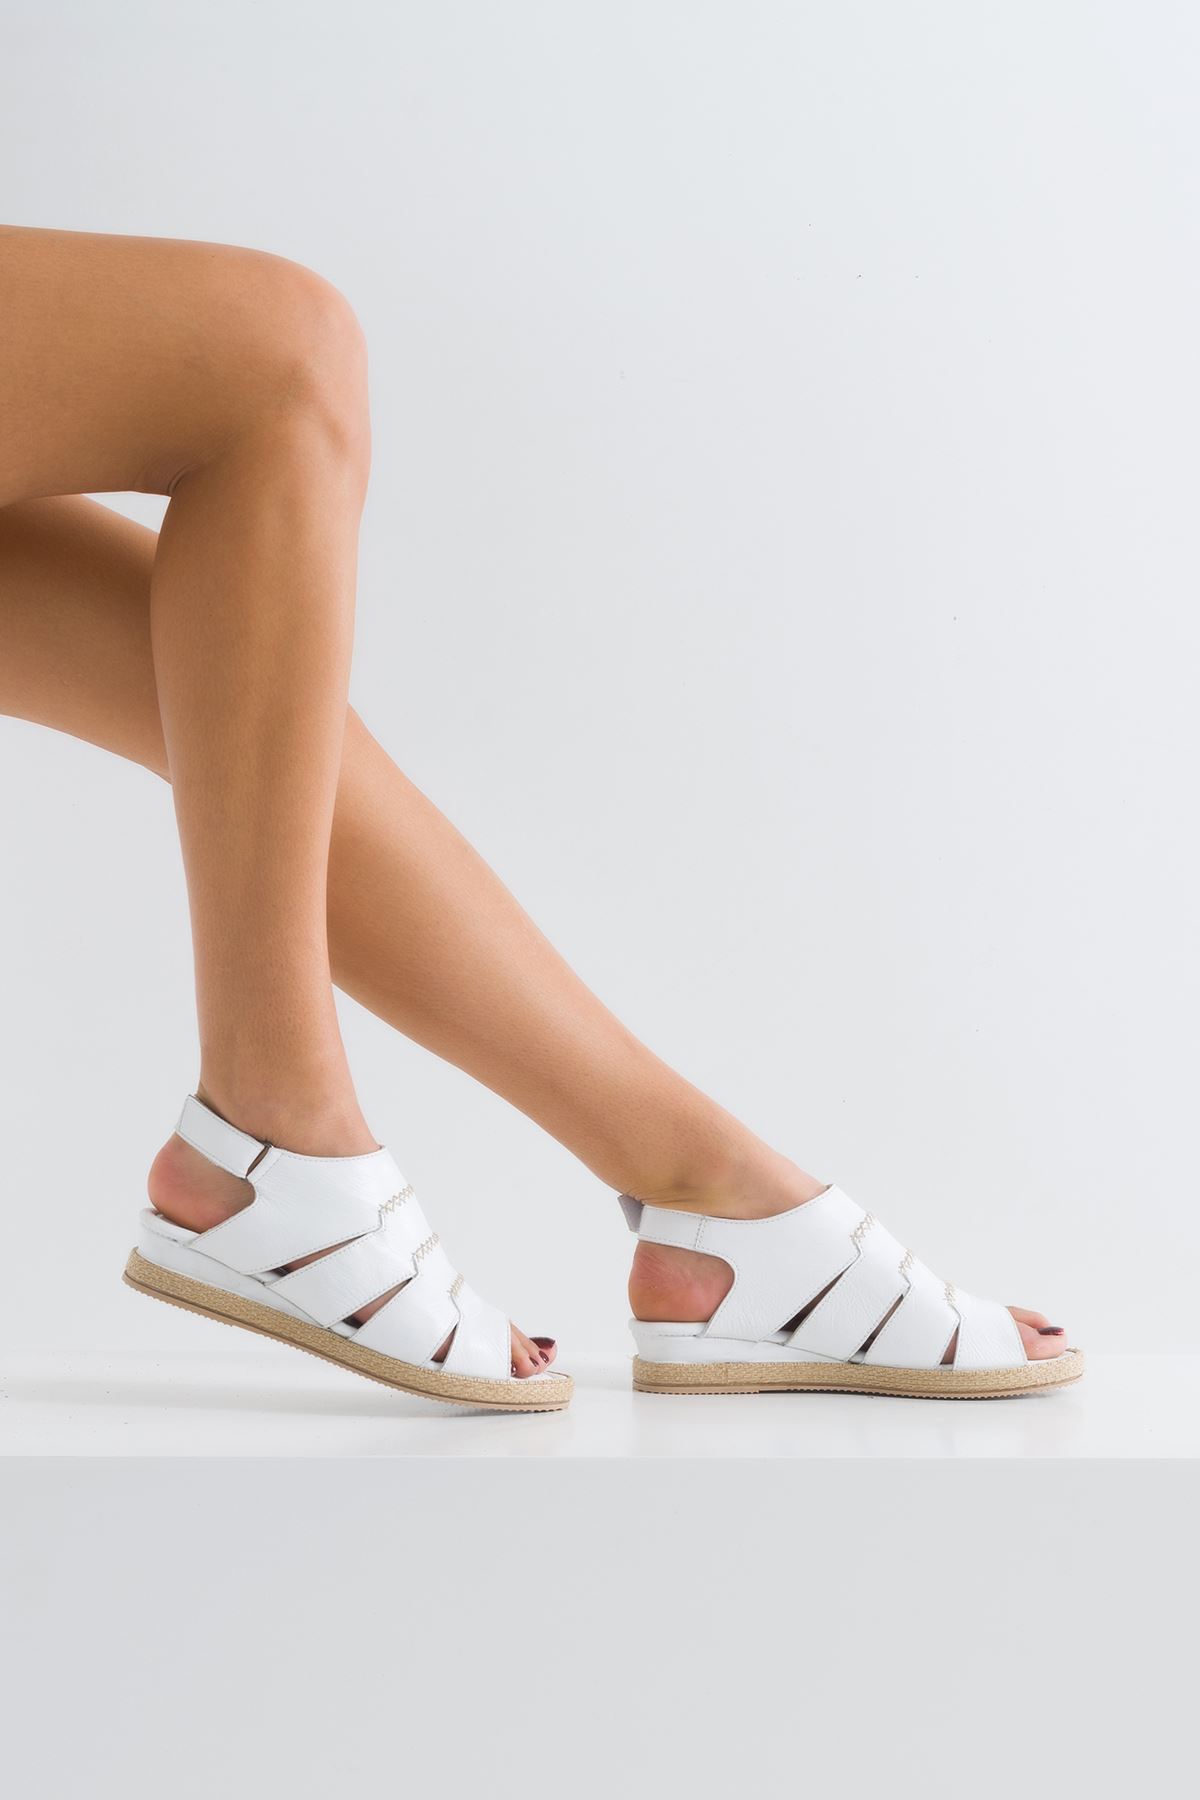 Diore Kadın Sandalet Beyaz